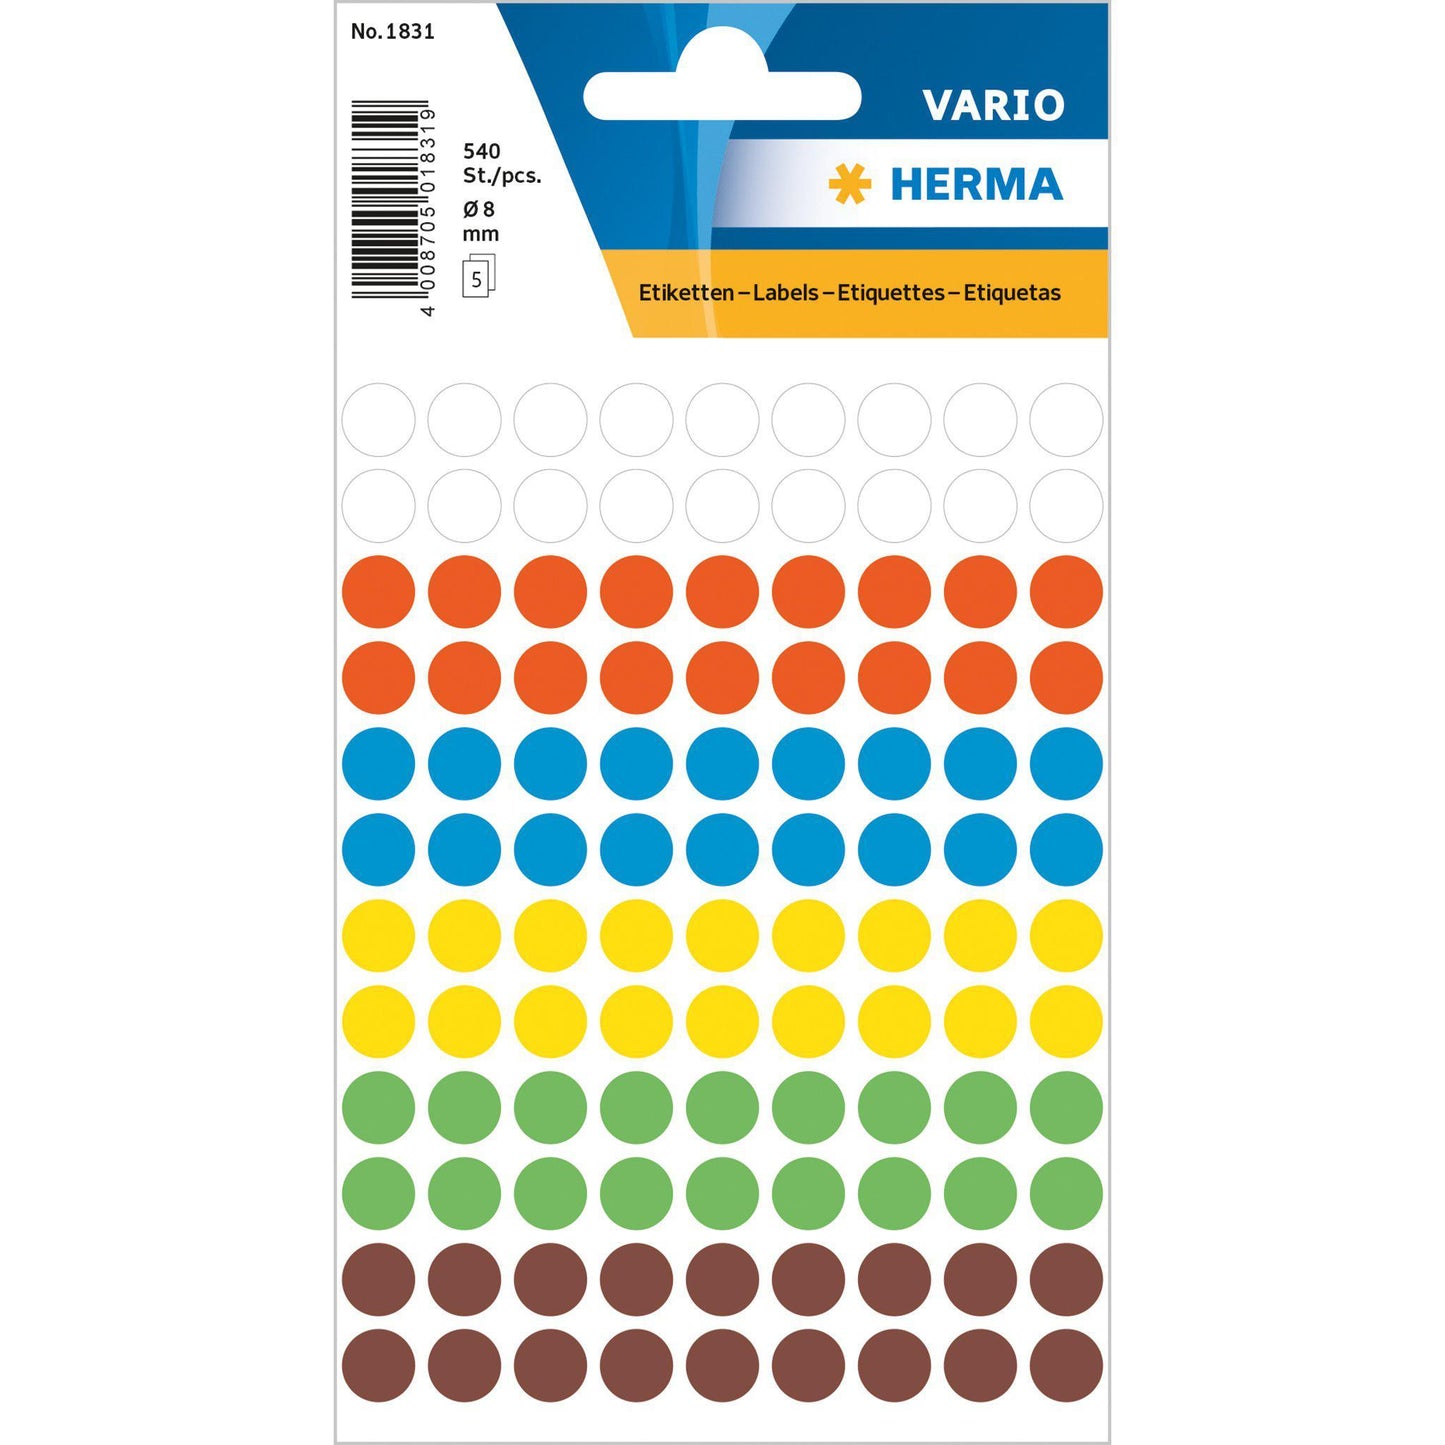 HRM Vario Etiquettes Rondes-Étiquettes-Herma-8 mm - 540 pièces-Assorties-Papeterie du Dôme